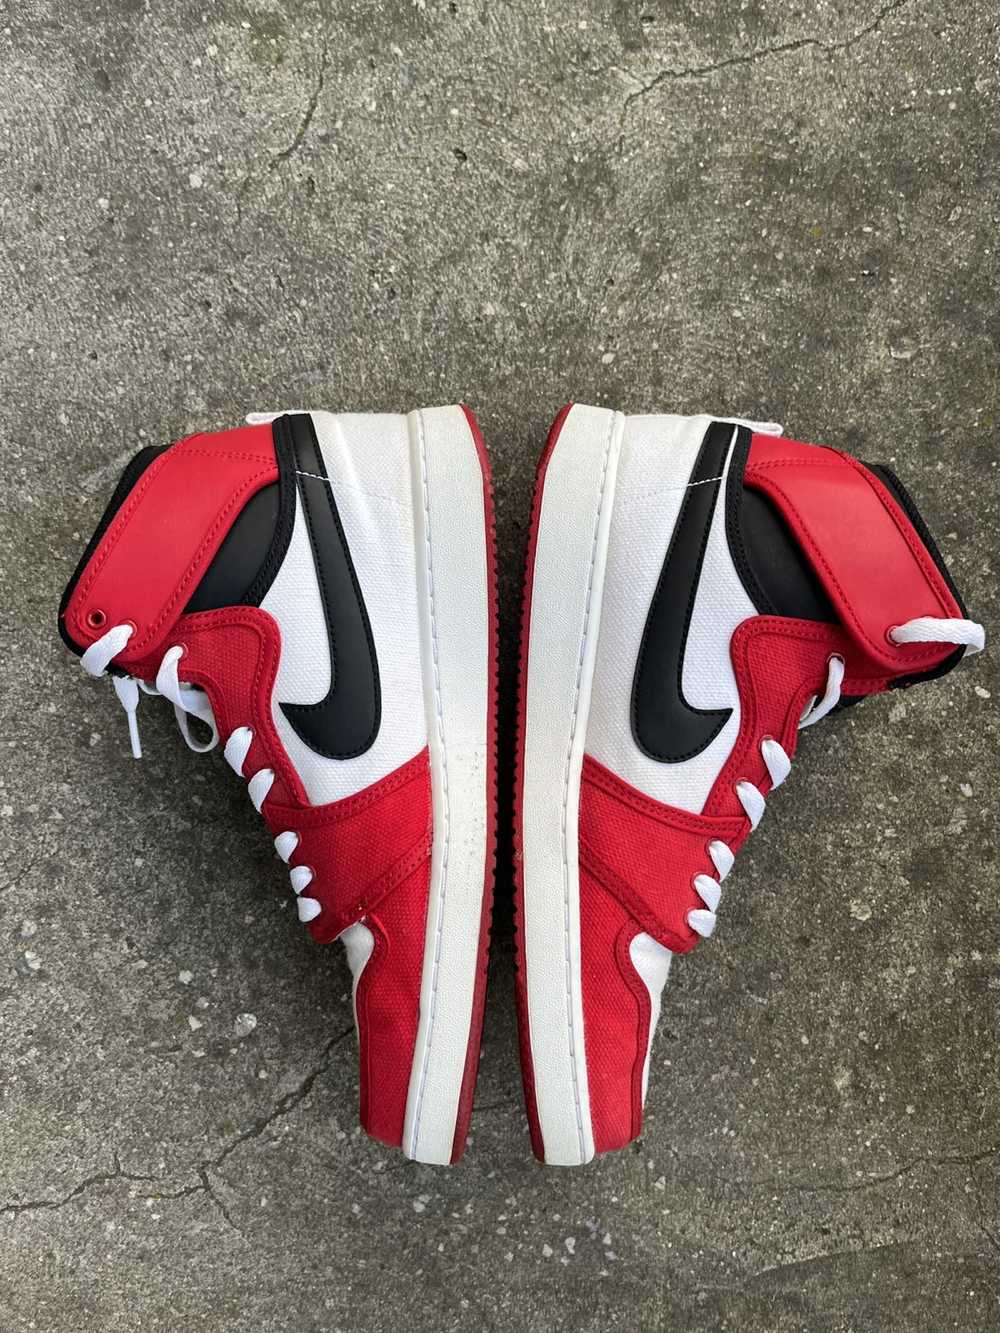 Jordan Brand × Nike 2012 Nike AJKO “Bulls” Red an… - image 3